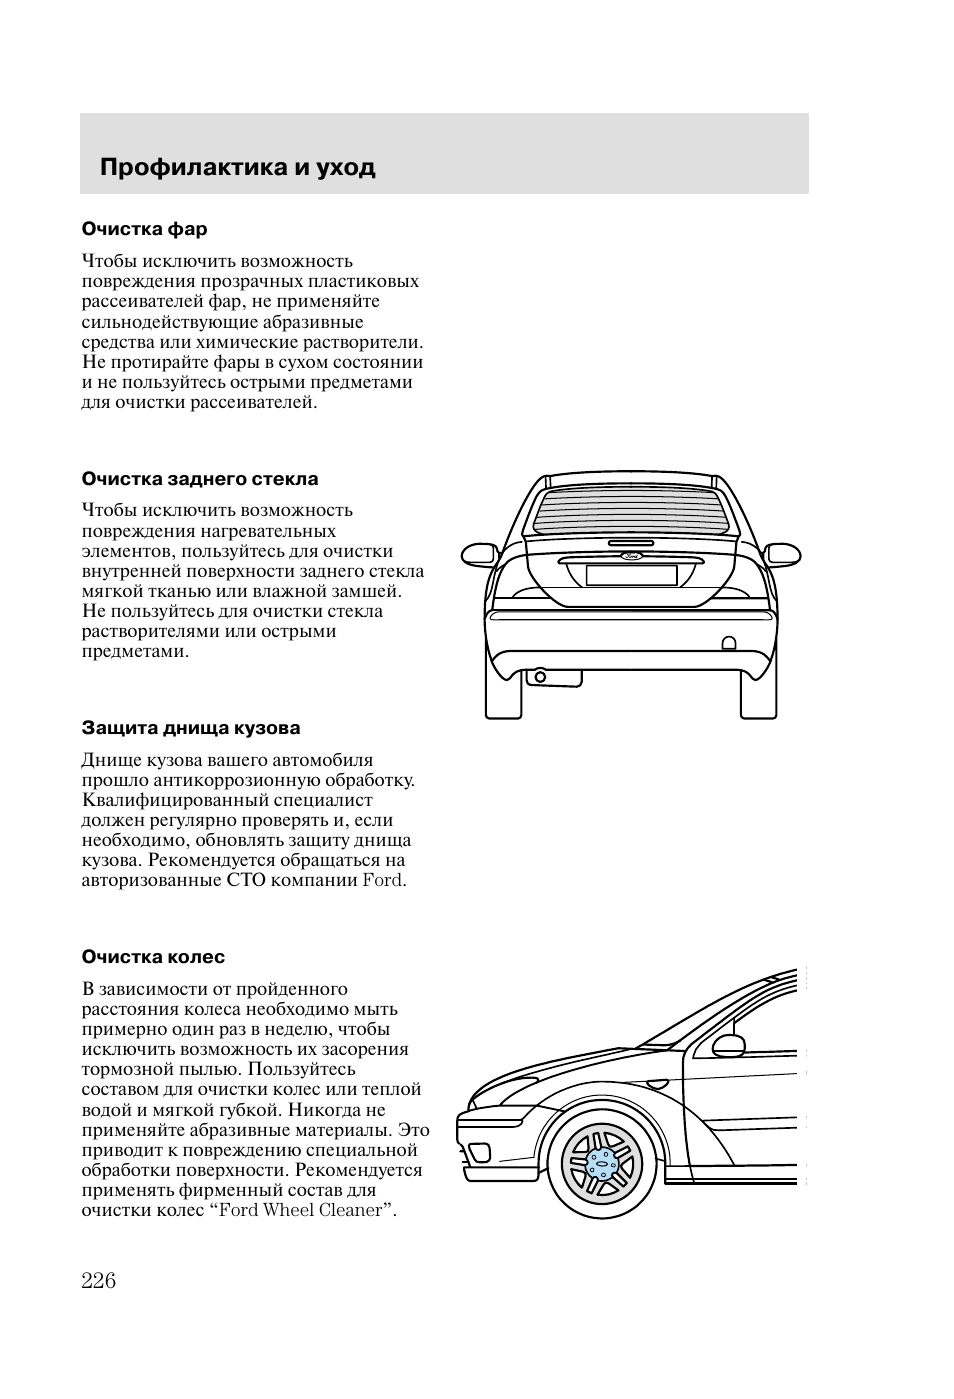 инструкция по ремонту форд-фокус 1